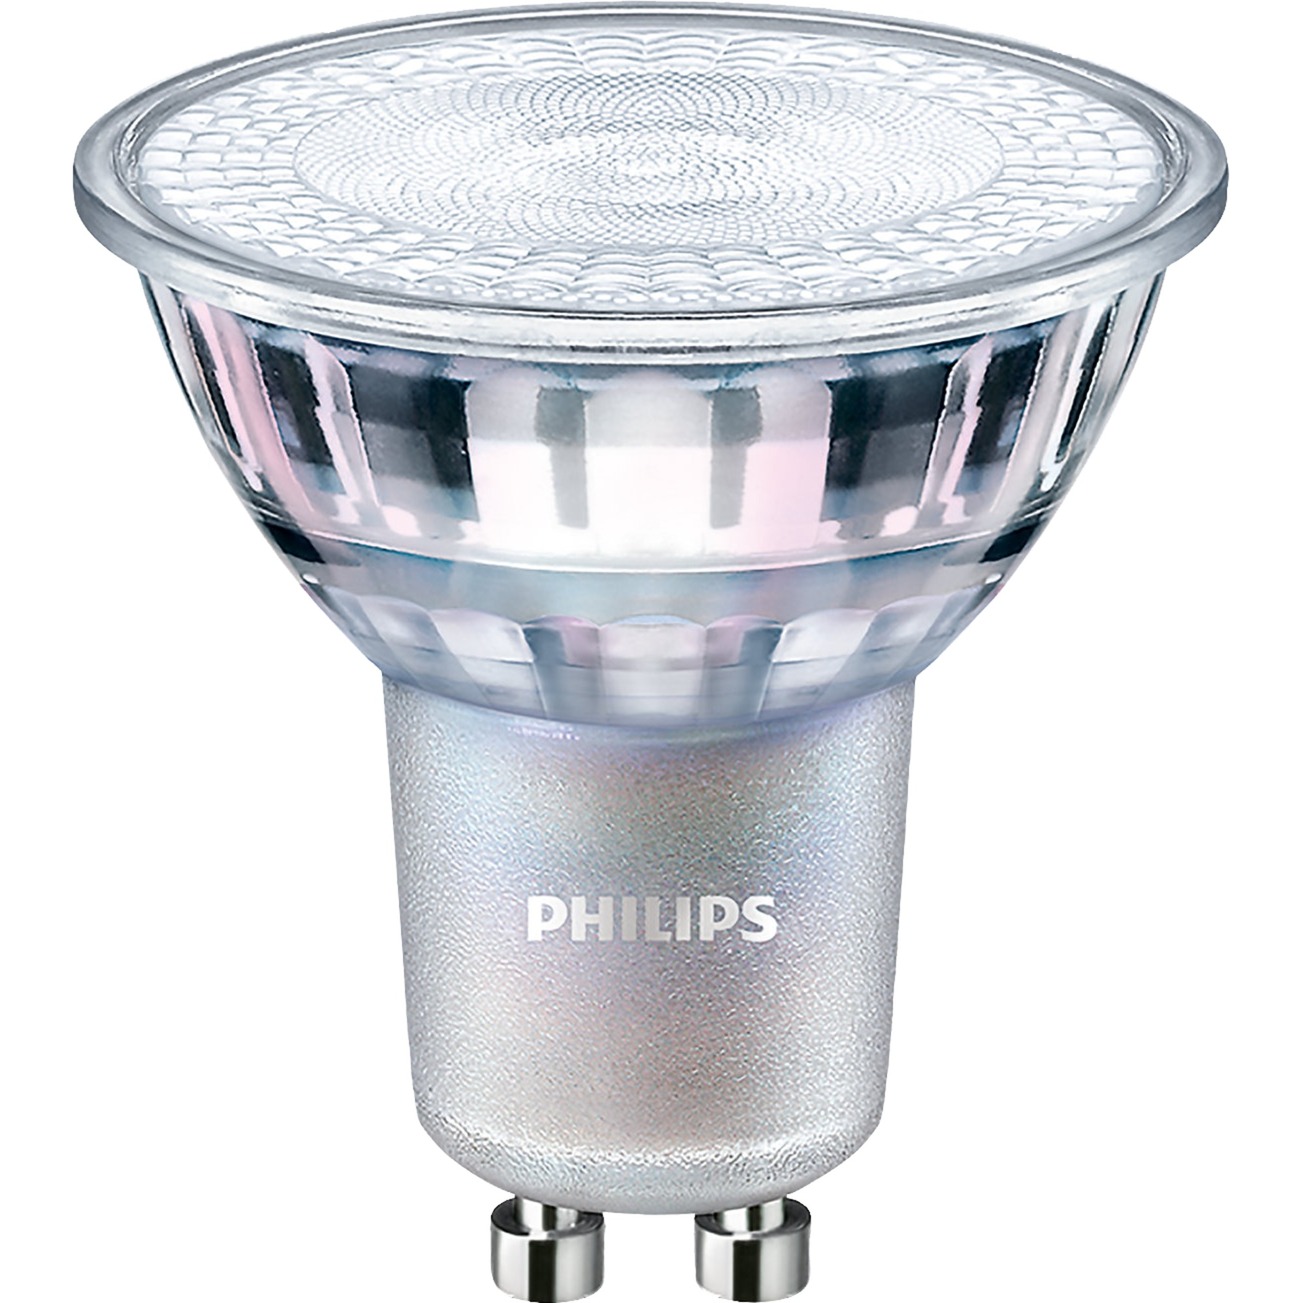 MASTER LEDspot Value D 4.9-50W GU10 930 36D, LED-Lampe von Philips